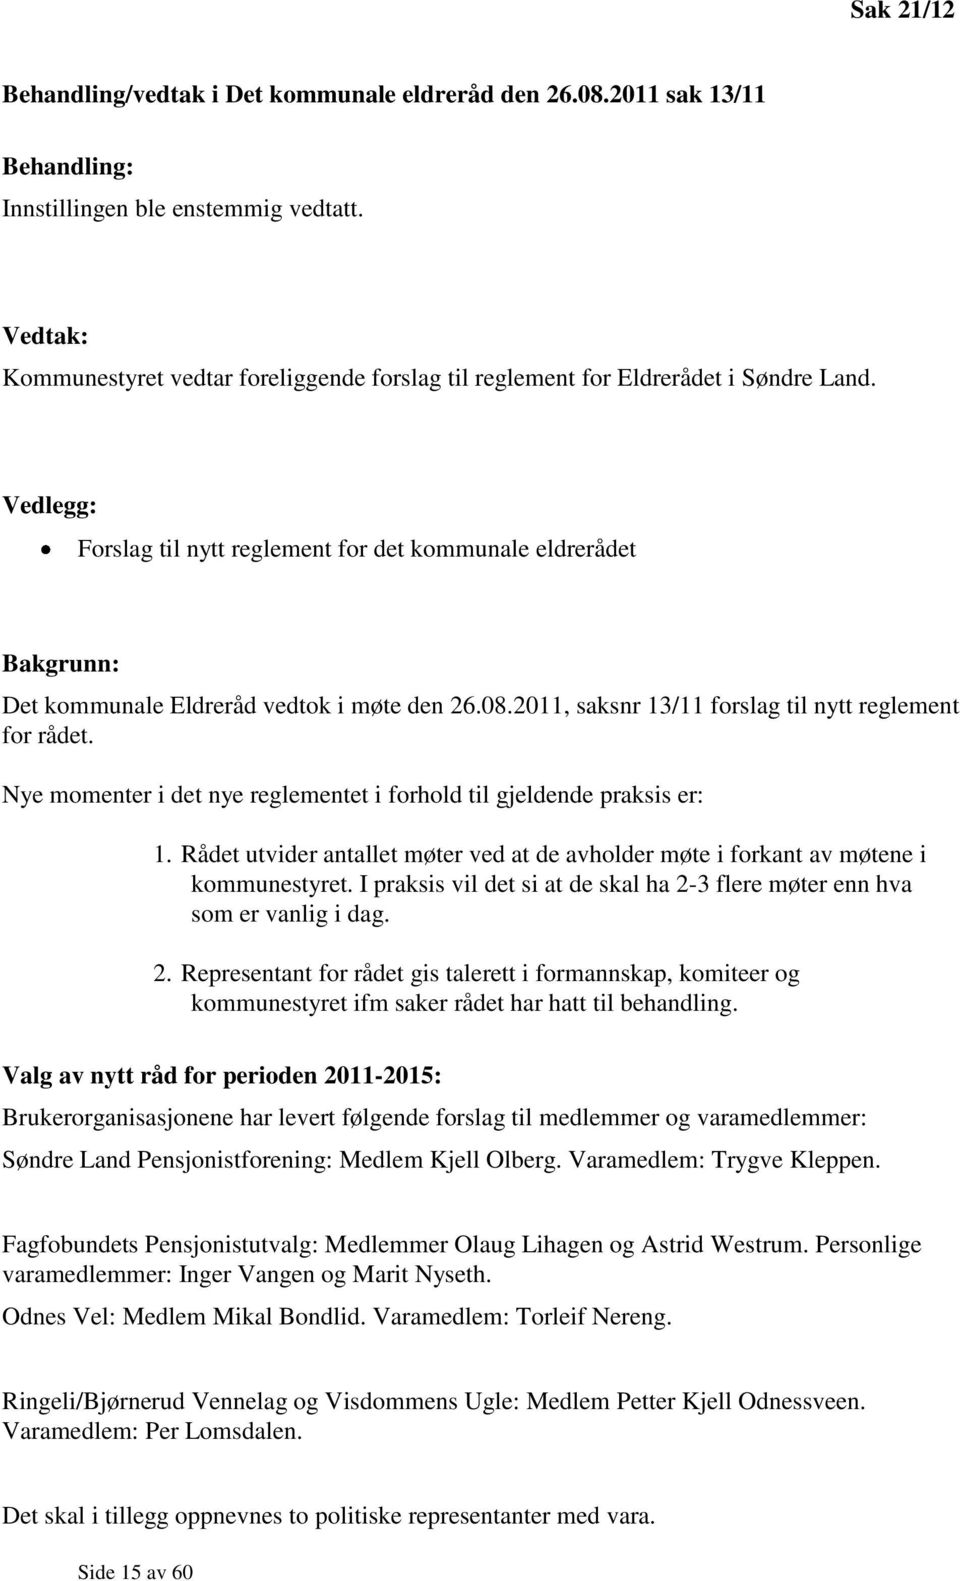 Vedlegg: Forslag til nytt reglement for det kommunale eldrerådet Bakgrunn: Det kommunale Eldreråd vedtok i møte den 26.08.2011, saksnr 13/11 forslag til nytt reglement for rådet.